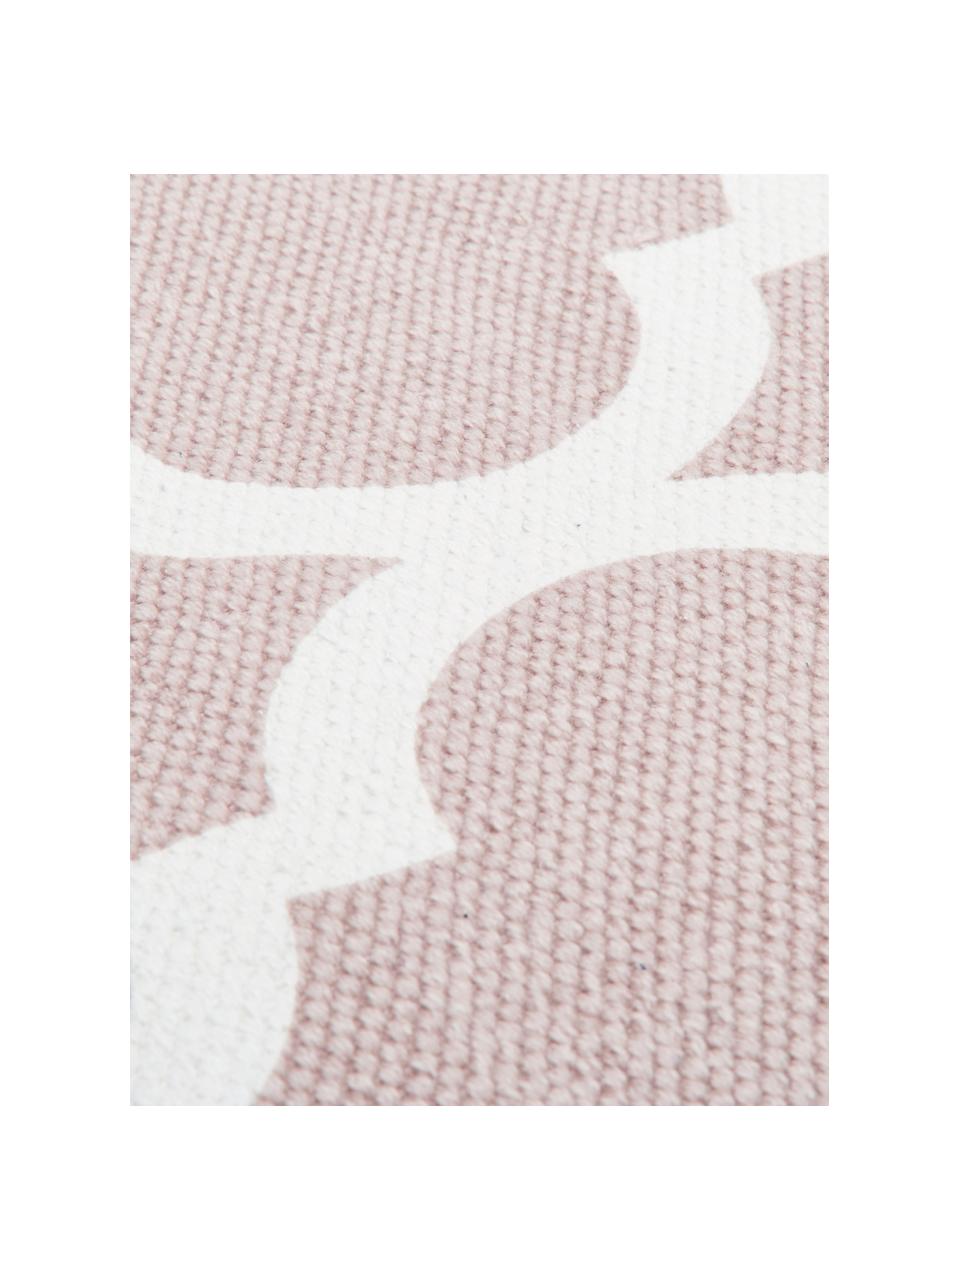 Dünner Baumwollteppich Amira in Rosa/Weiß, handgewebt, 100% Baumwolle, Rosa, Cremeweiß, B 160 x L 230 cm (Größe M)